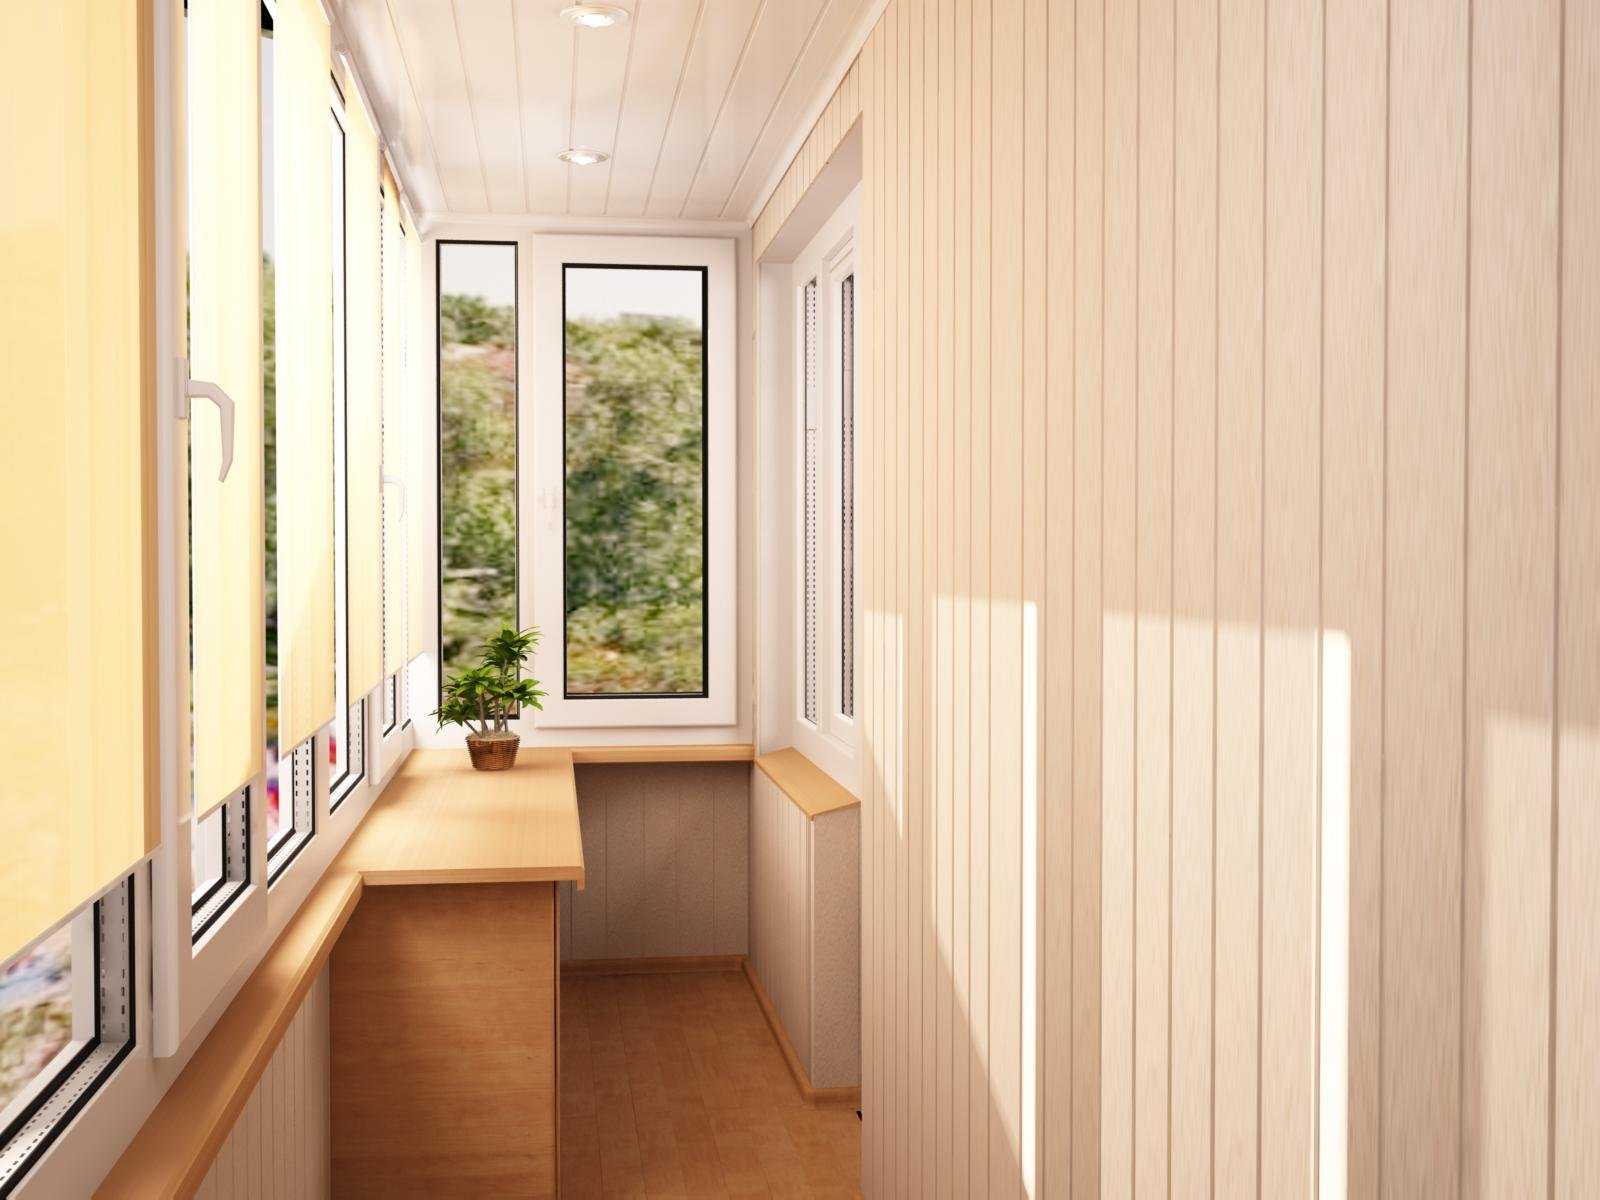 Как оформить балкон: 10 идей, которые вам понравятся. обустройство балкона — топ-10 лучших решений для маленького балкона (47 фото идей) - идеи дизайна интерьера